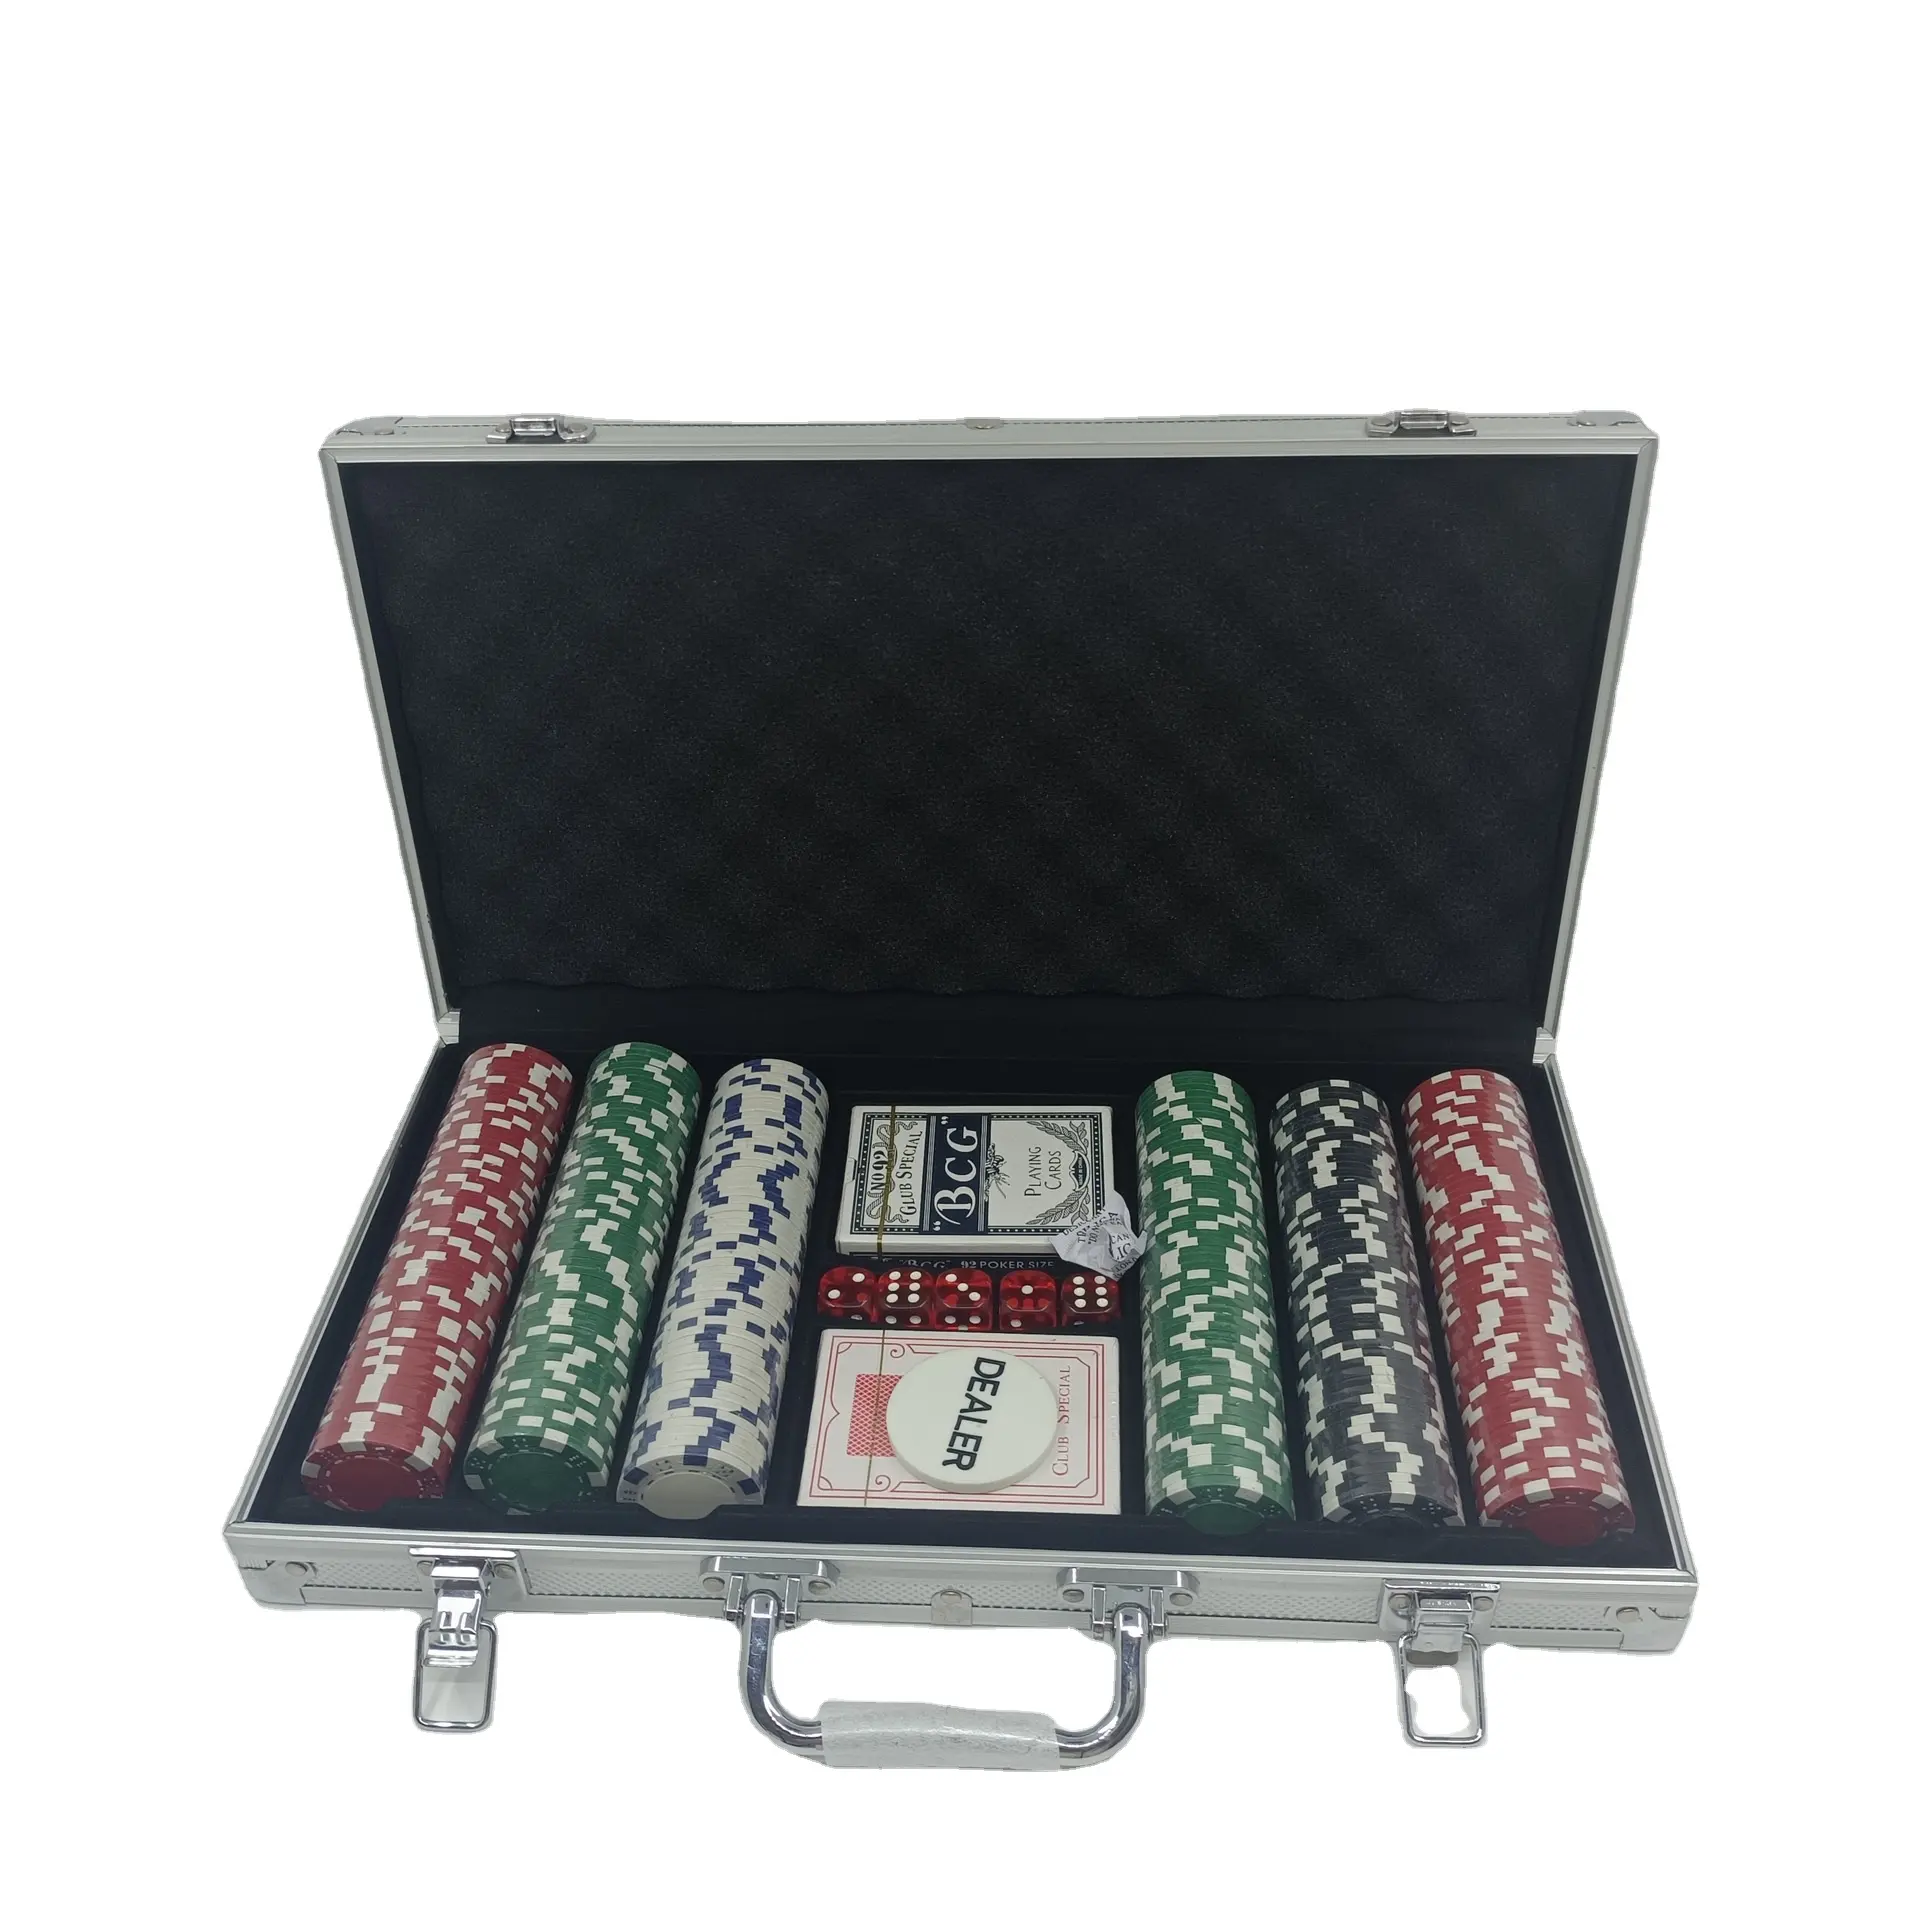 카지노 게임 포커 칩 게임 세트 알루미늄 케이스 테이블 도박 포커 칩 세트 300pcs